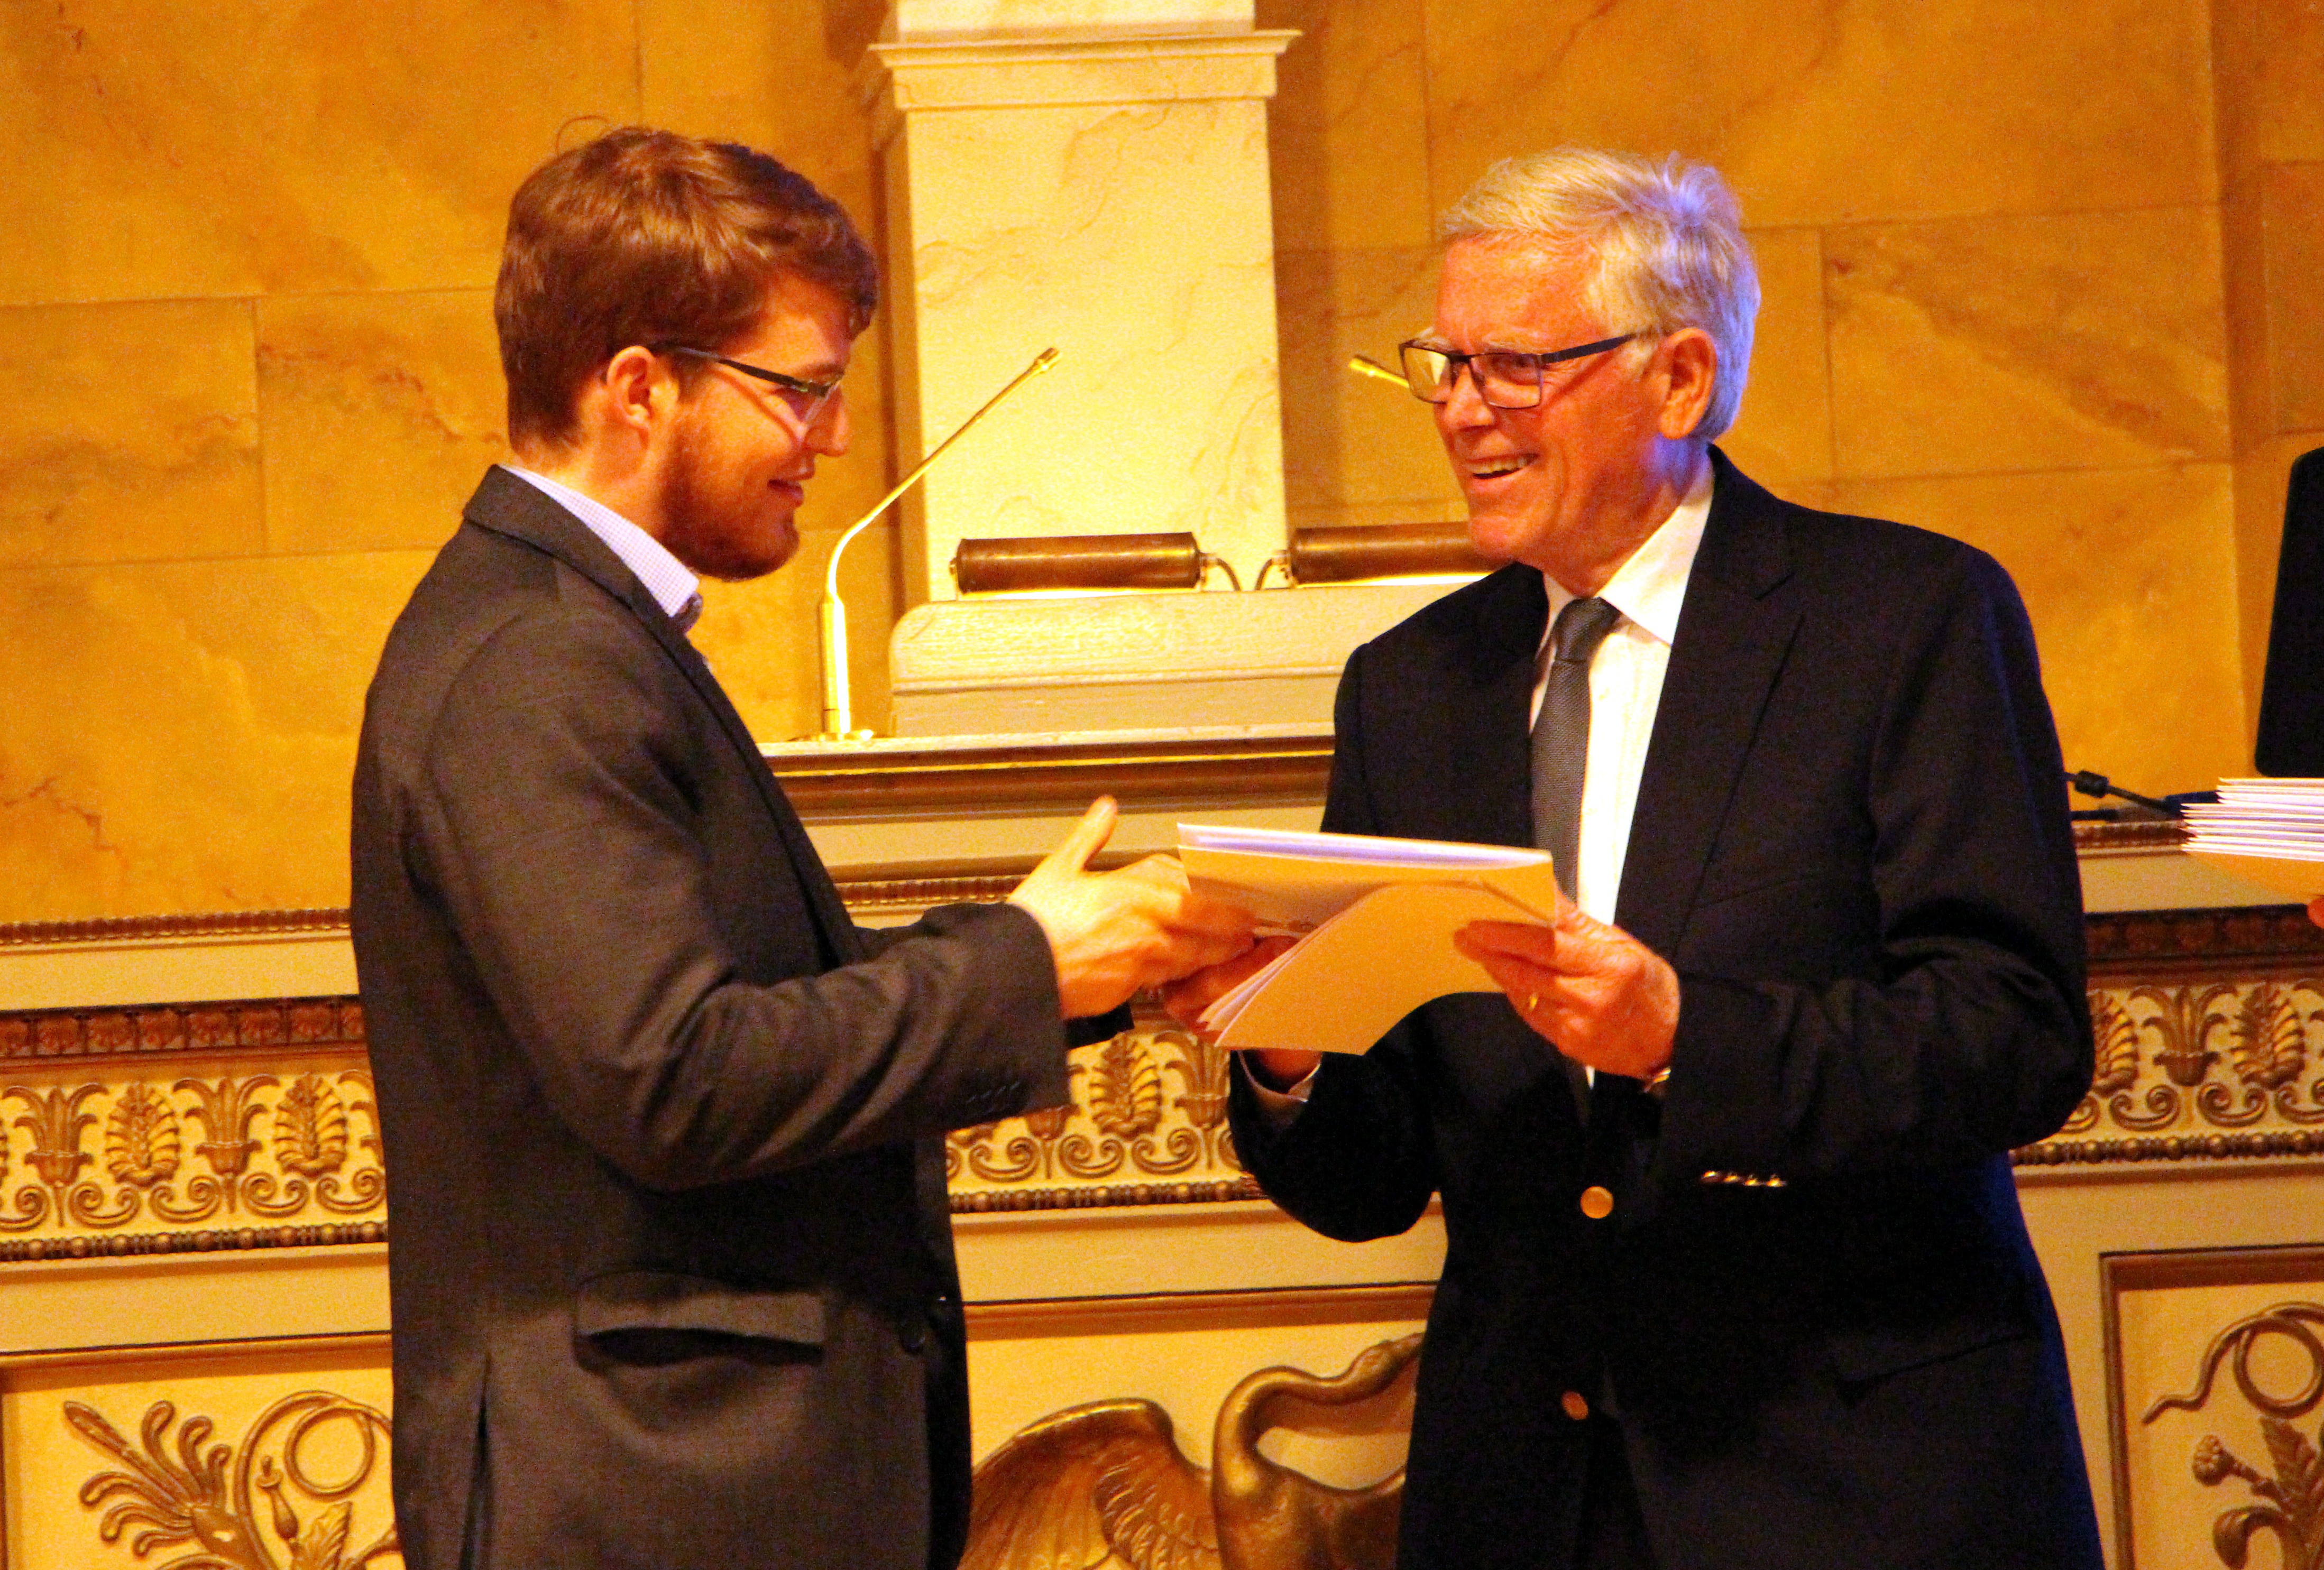 Dr. Richard Christopher Grone von der Tierärztlichen Hochschule Hannover, nimmt seine Auszeichnung von Prof. Dr. Ernst Kalm, Vorsitzender der H. Wilhelm Schaumann Stiftung, entgegen.